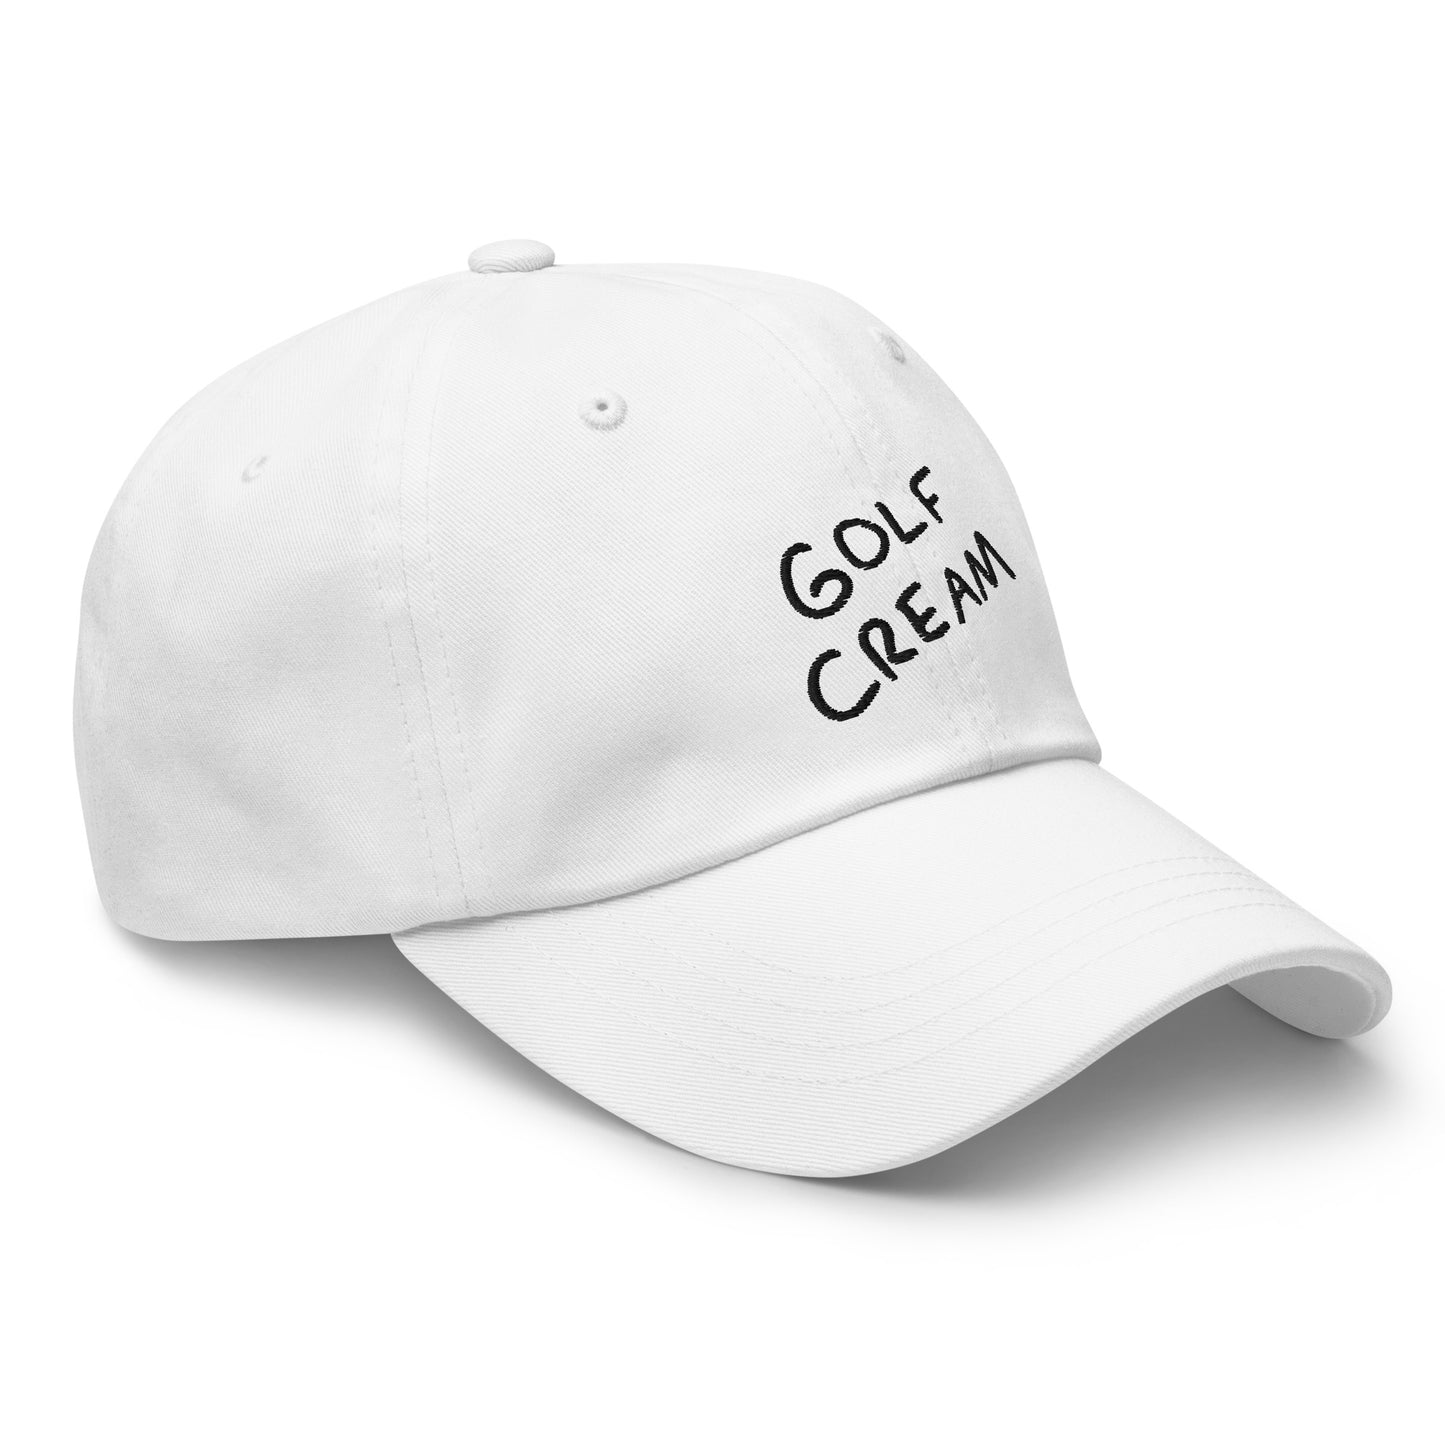 Dad GOLF CREAM Signature hat